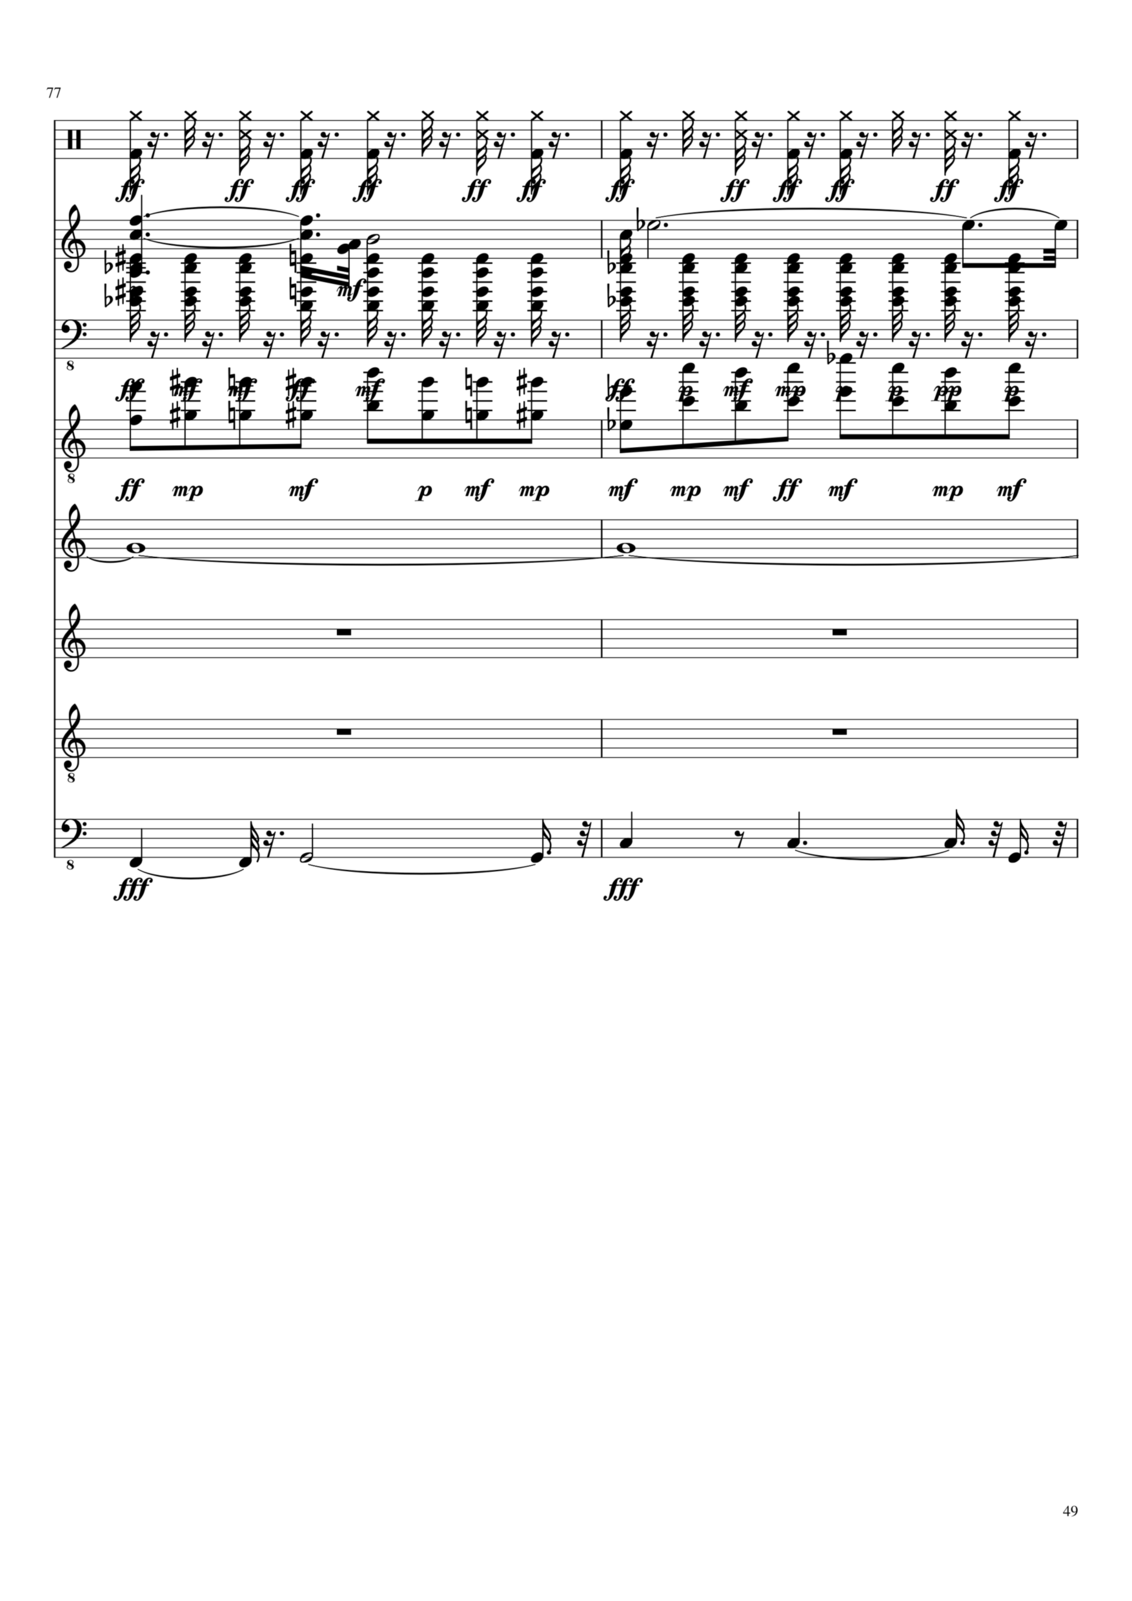 Vechnaya molodost slide, Image 4